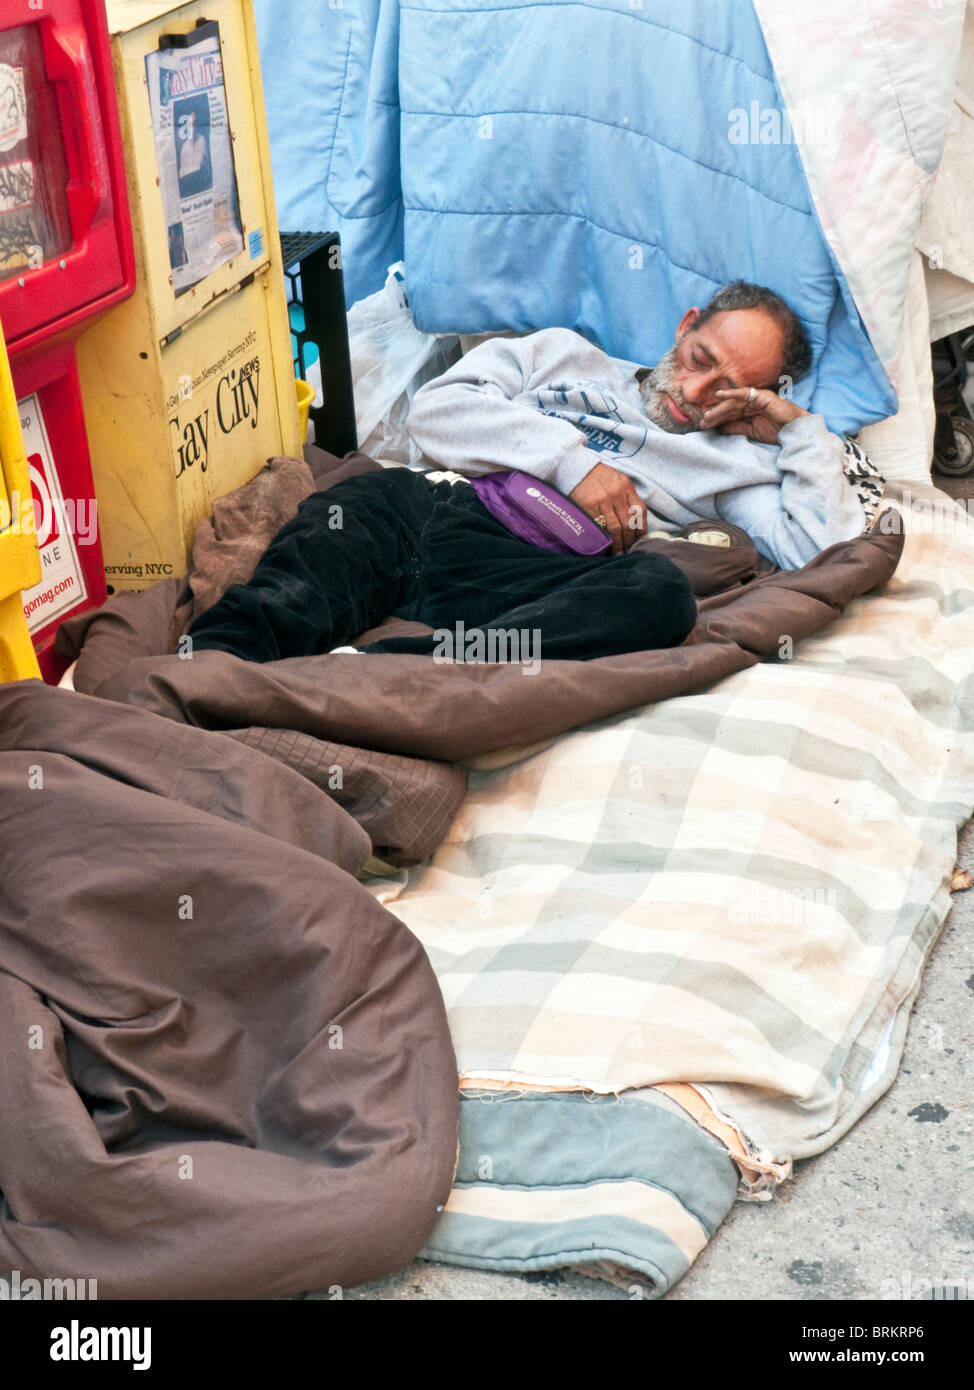 Hispanic Obdachloser mit abgemagerten Gesicht tragen saubere Kleidung liegt friedlich schlafend auf saubere Bettwäsche auf New Yorker Bürgersteig Stockfoto